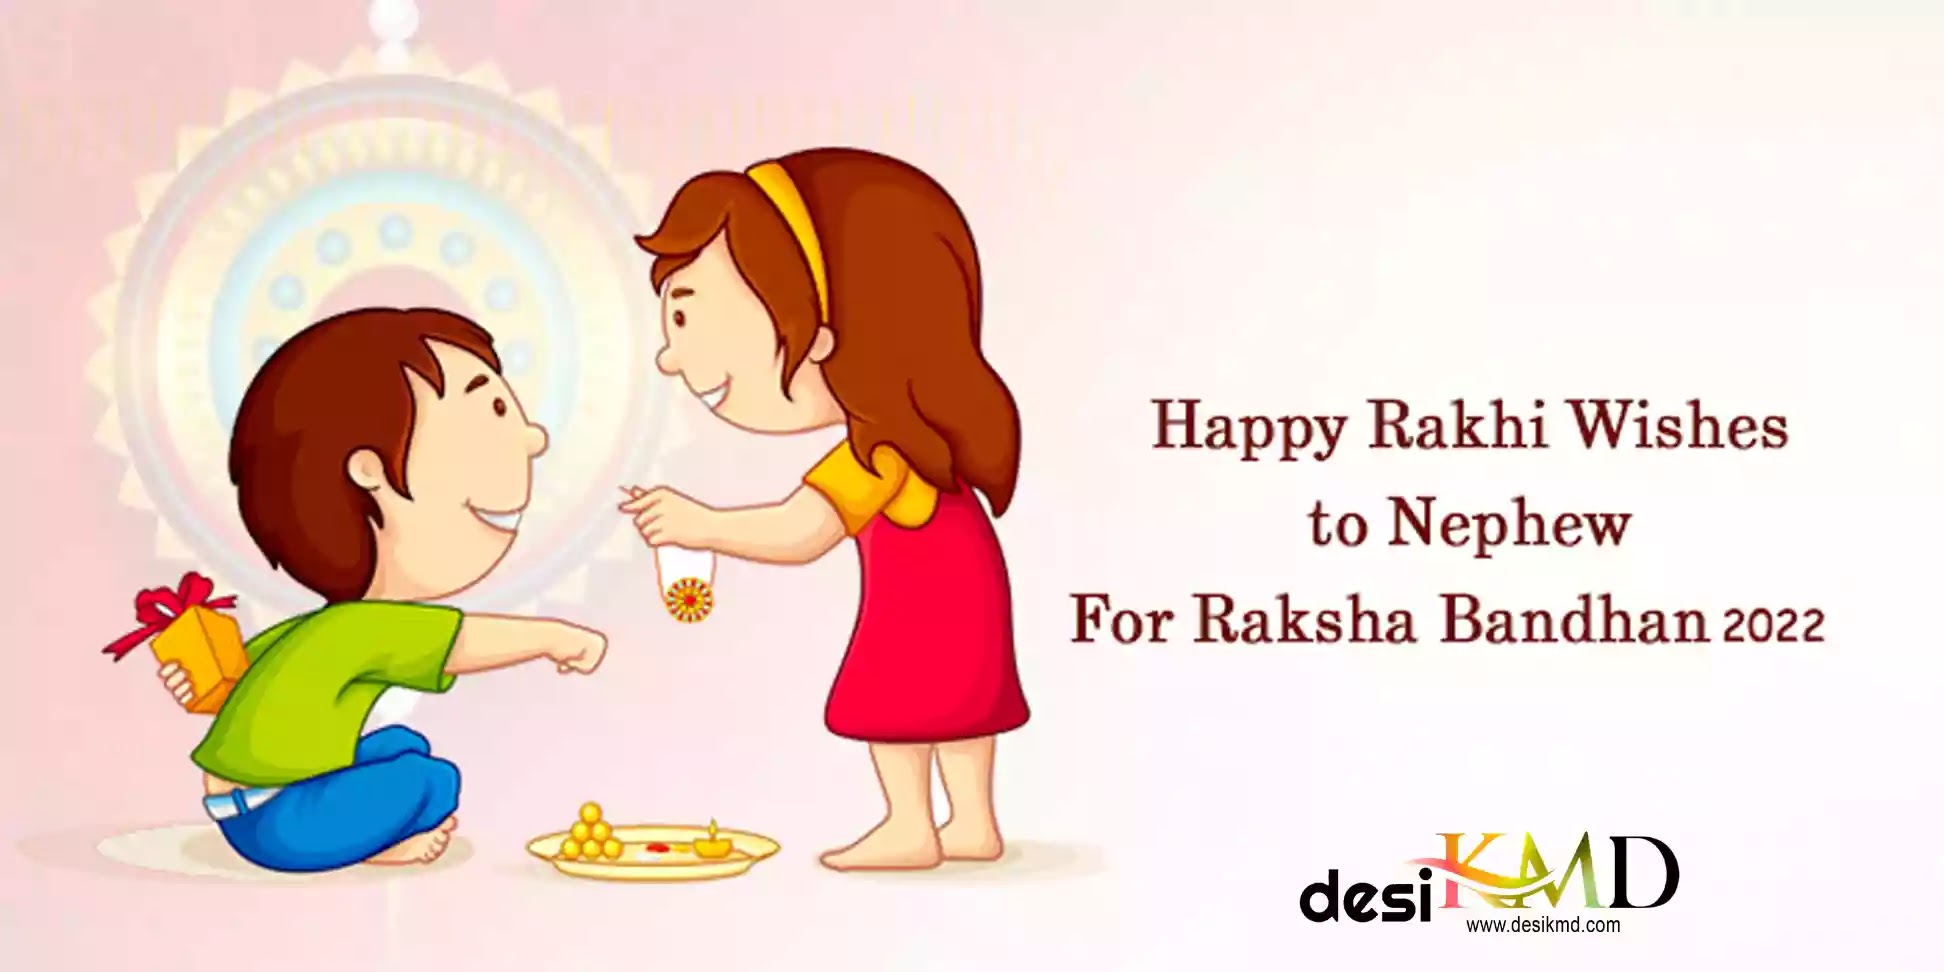 Happy Raksha Bandhan 2022 Hindi Shayari for Brother & Sister  Best Wishes & pictures | भाई और बहन के लिए हैप्पी रक्षा बंधन 2022 शायरी | Desikmd